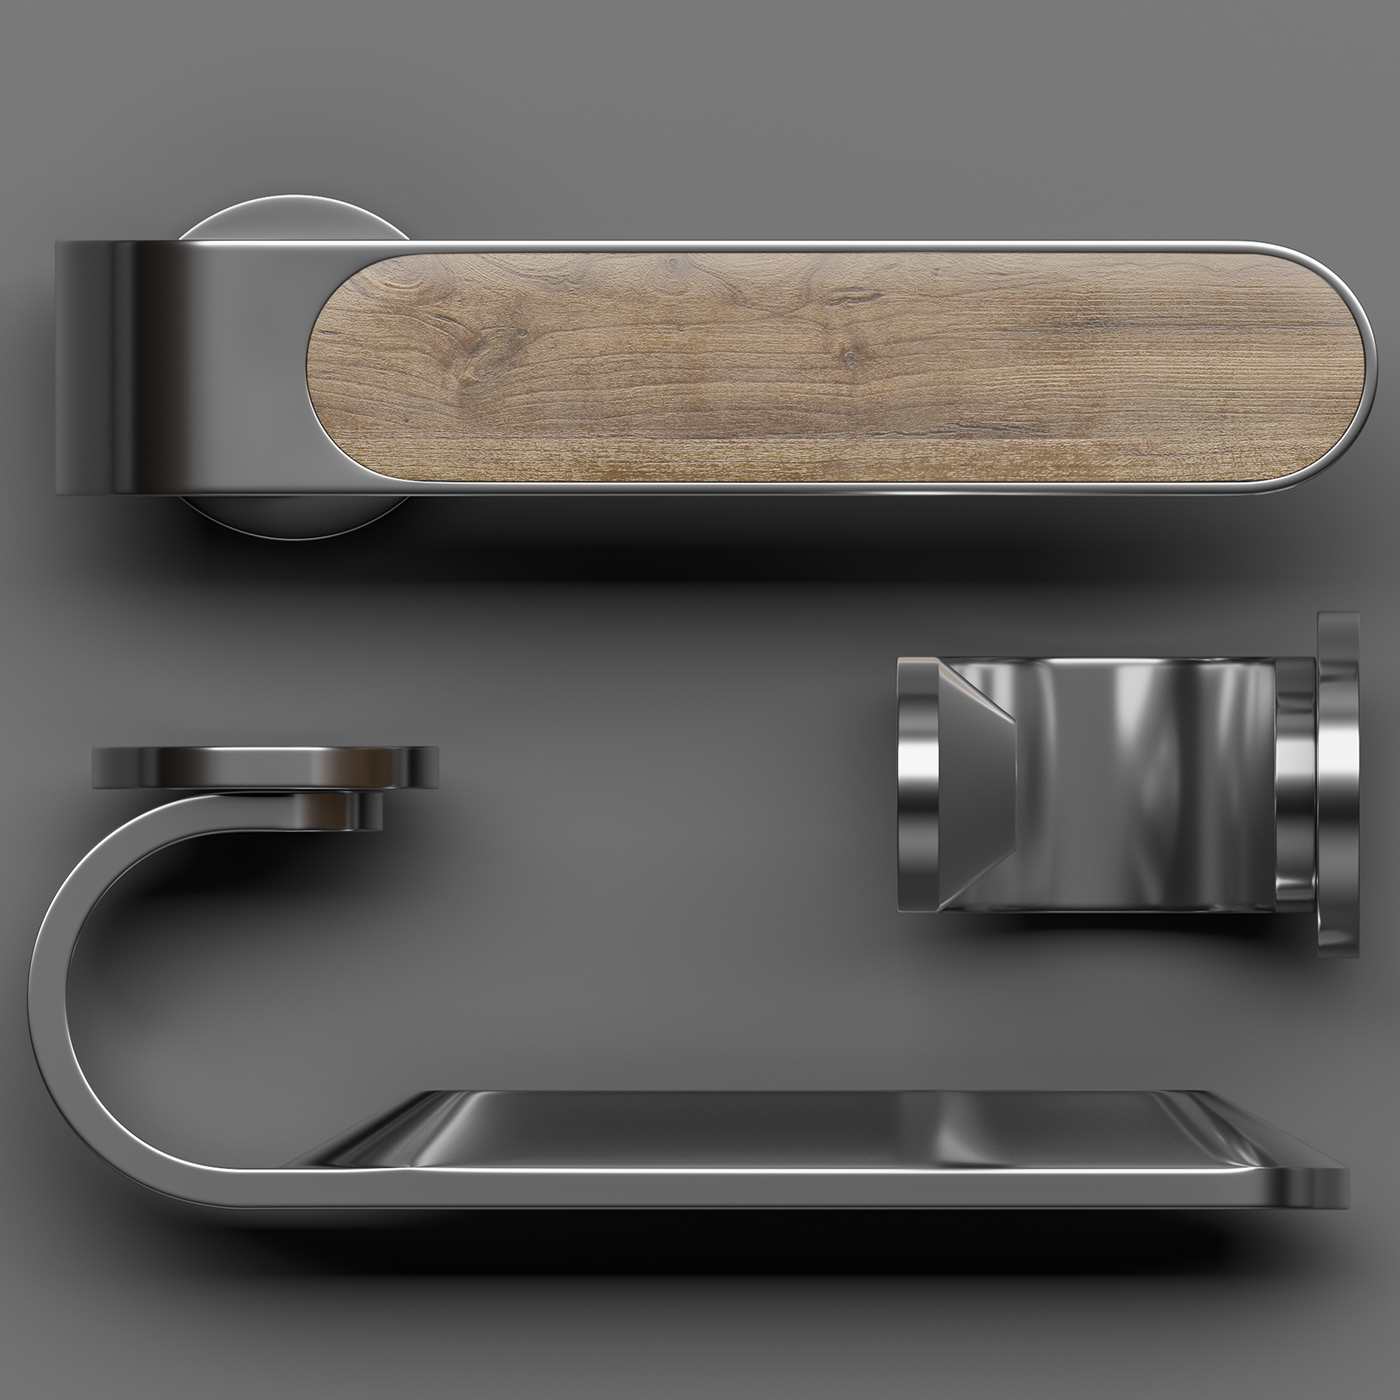 door handle Minimalism hidden installation hardware industrial design  product design  дверная ручка фурнитура ручка